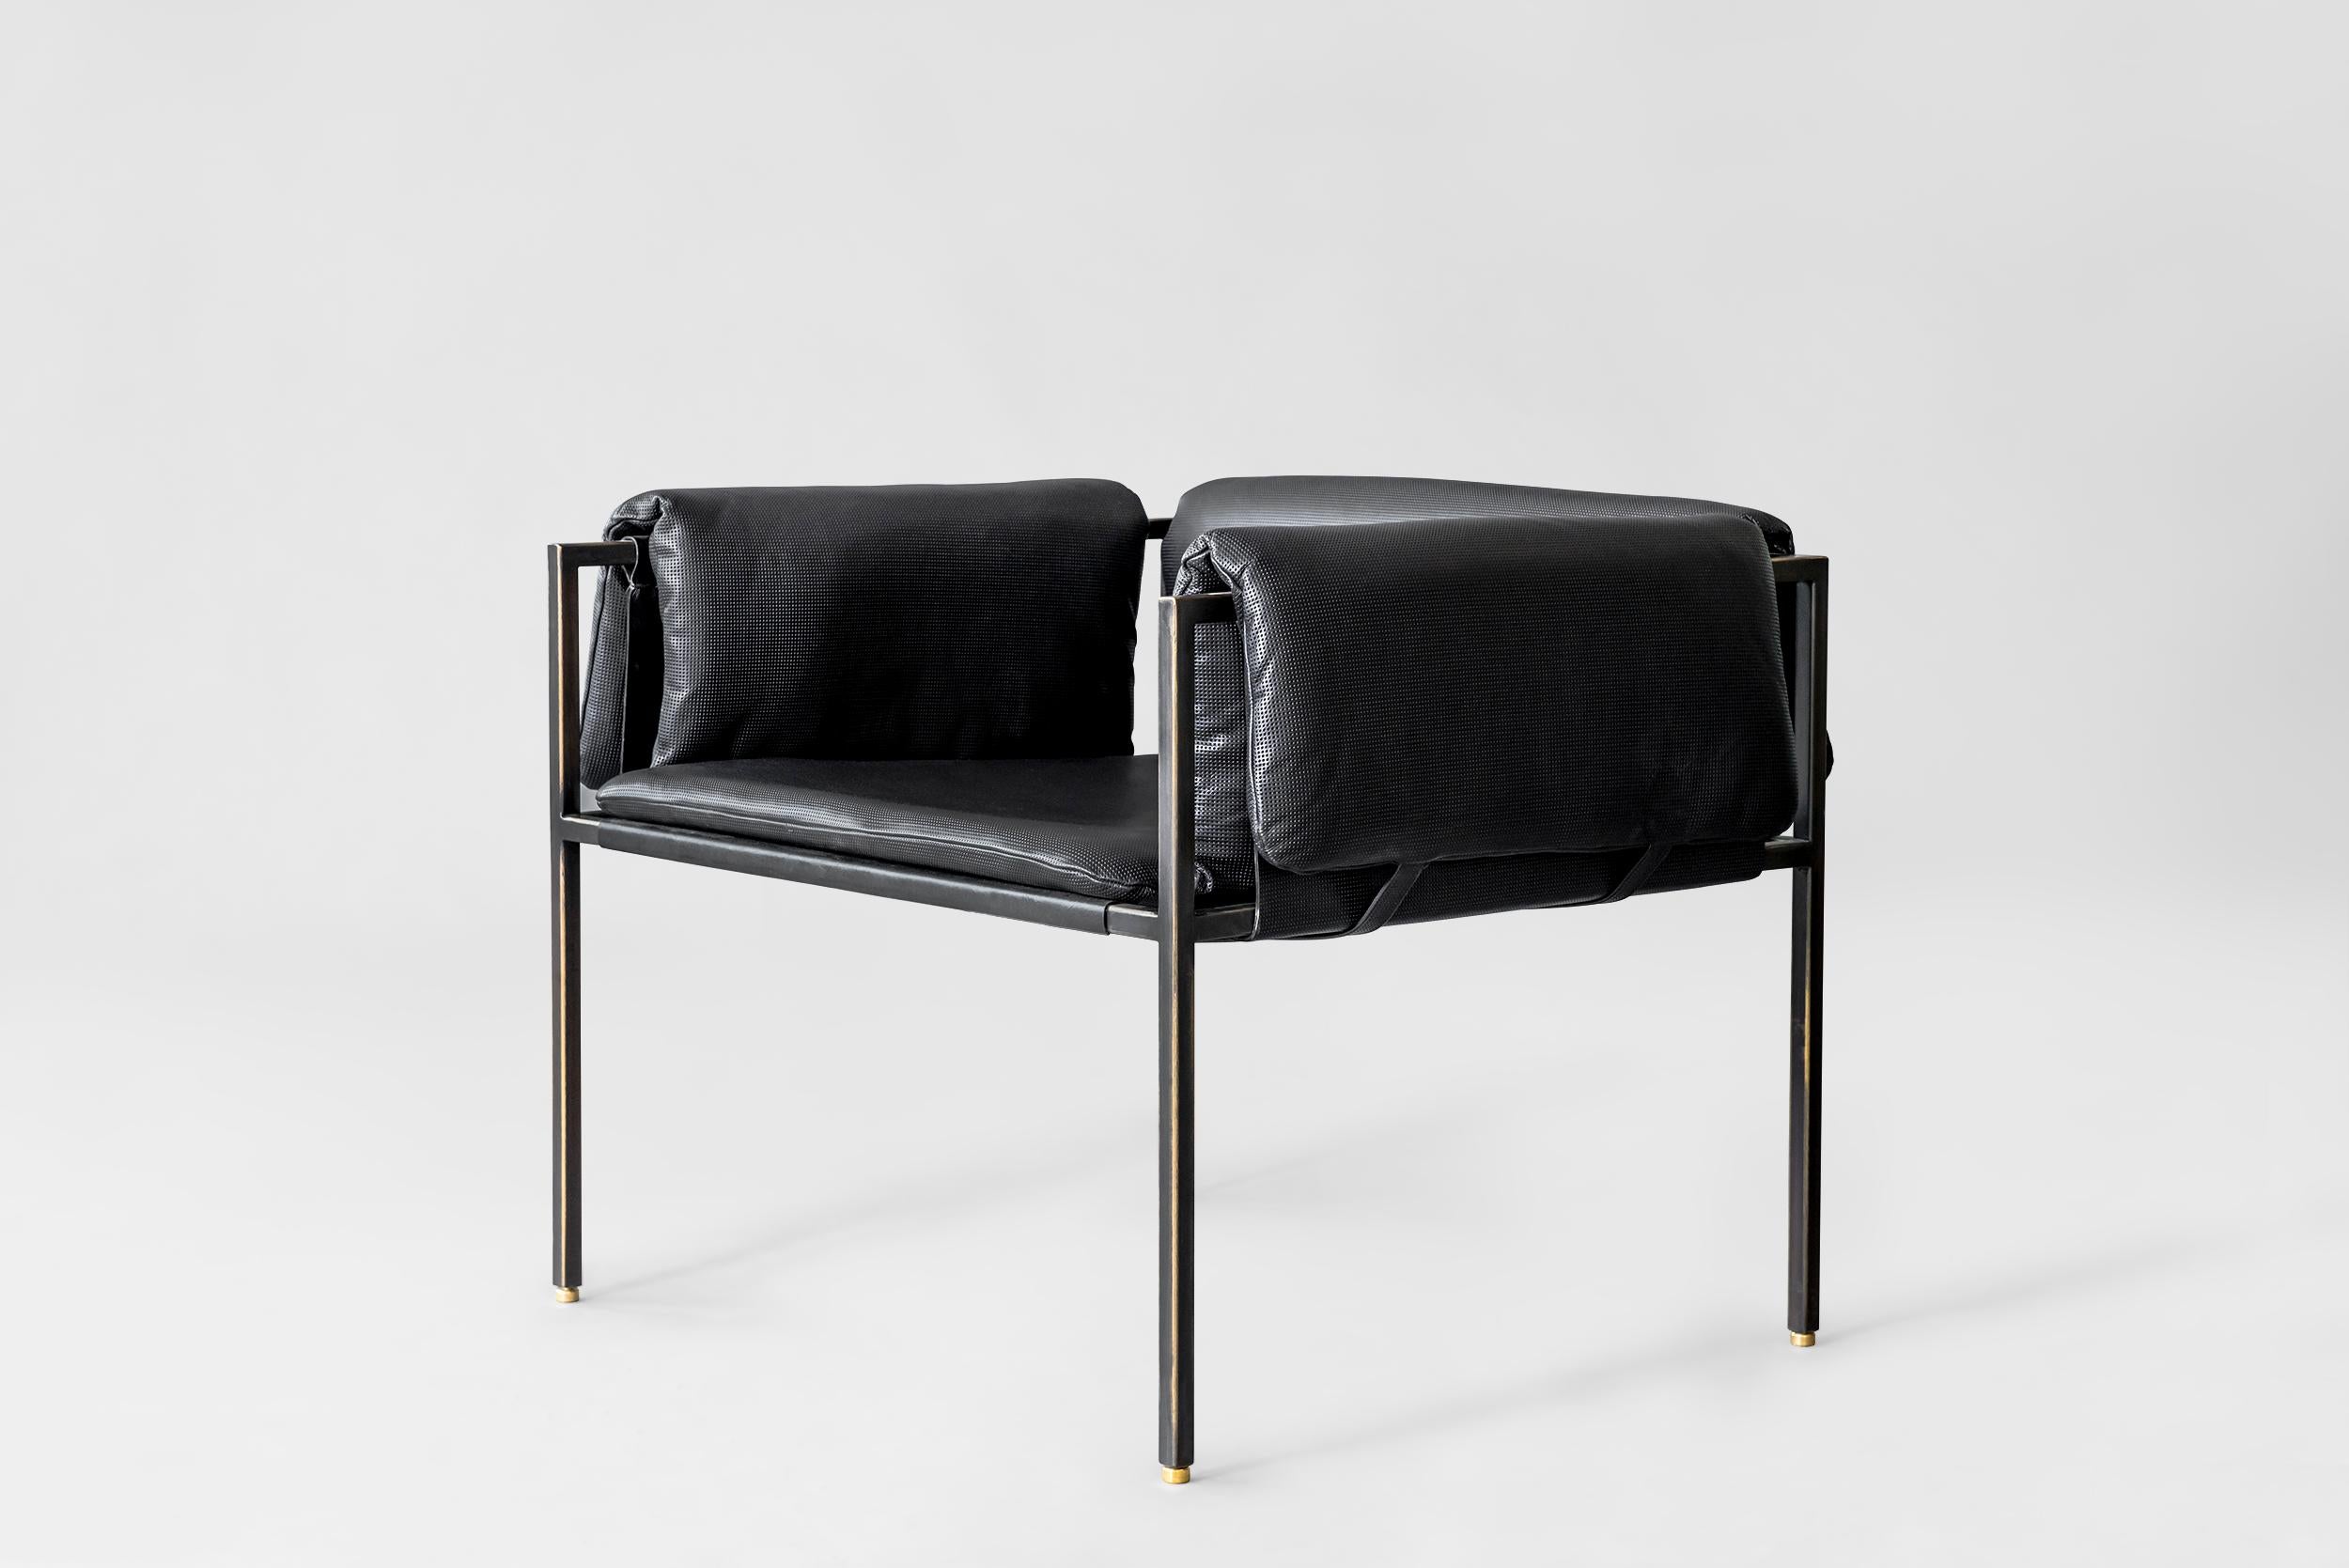 Chaise longue Flow par Atra Design
Dimensions : P 75,5 x L 75,6 x H 60,2 cm
Matériaux : Cuir Lamborgini, acier noirci avec des capuchons en laiton.

Atra Design
Nous sommes Atra, une marque de meubles produite par Atra form A, un site de production